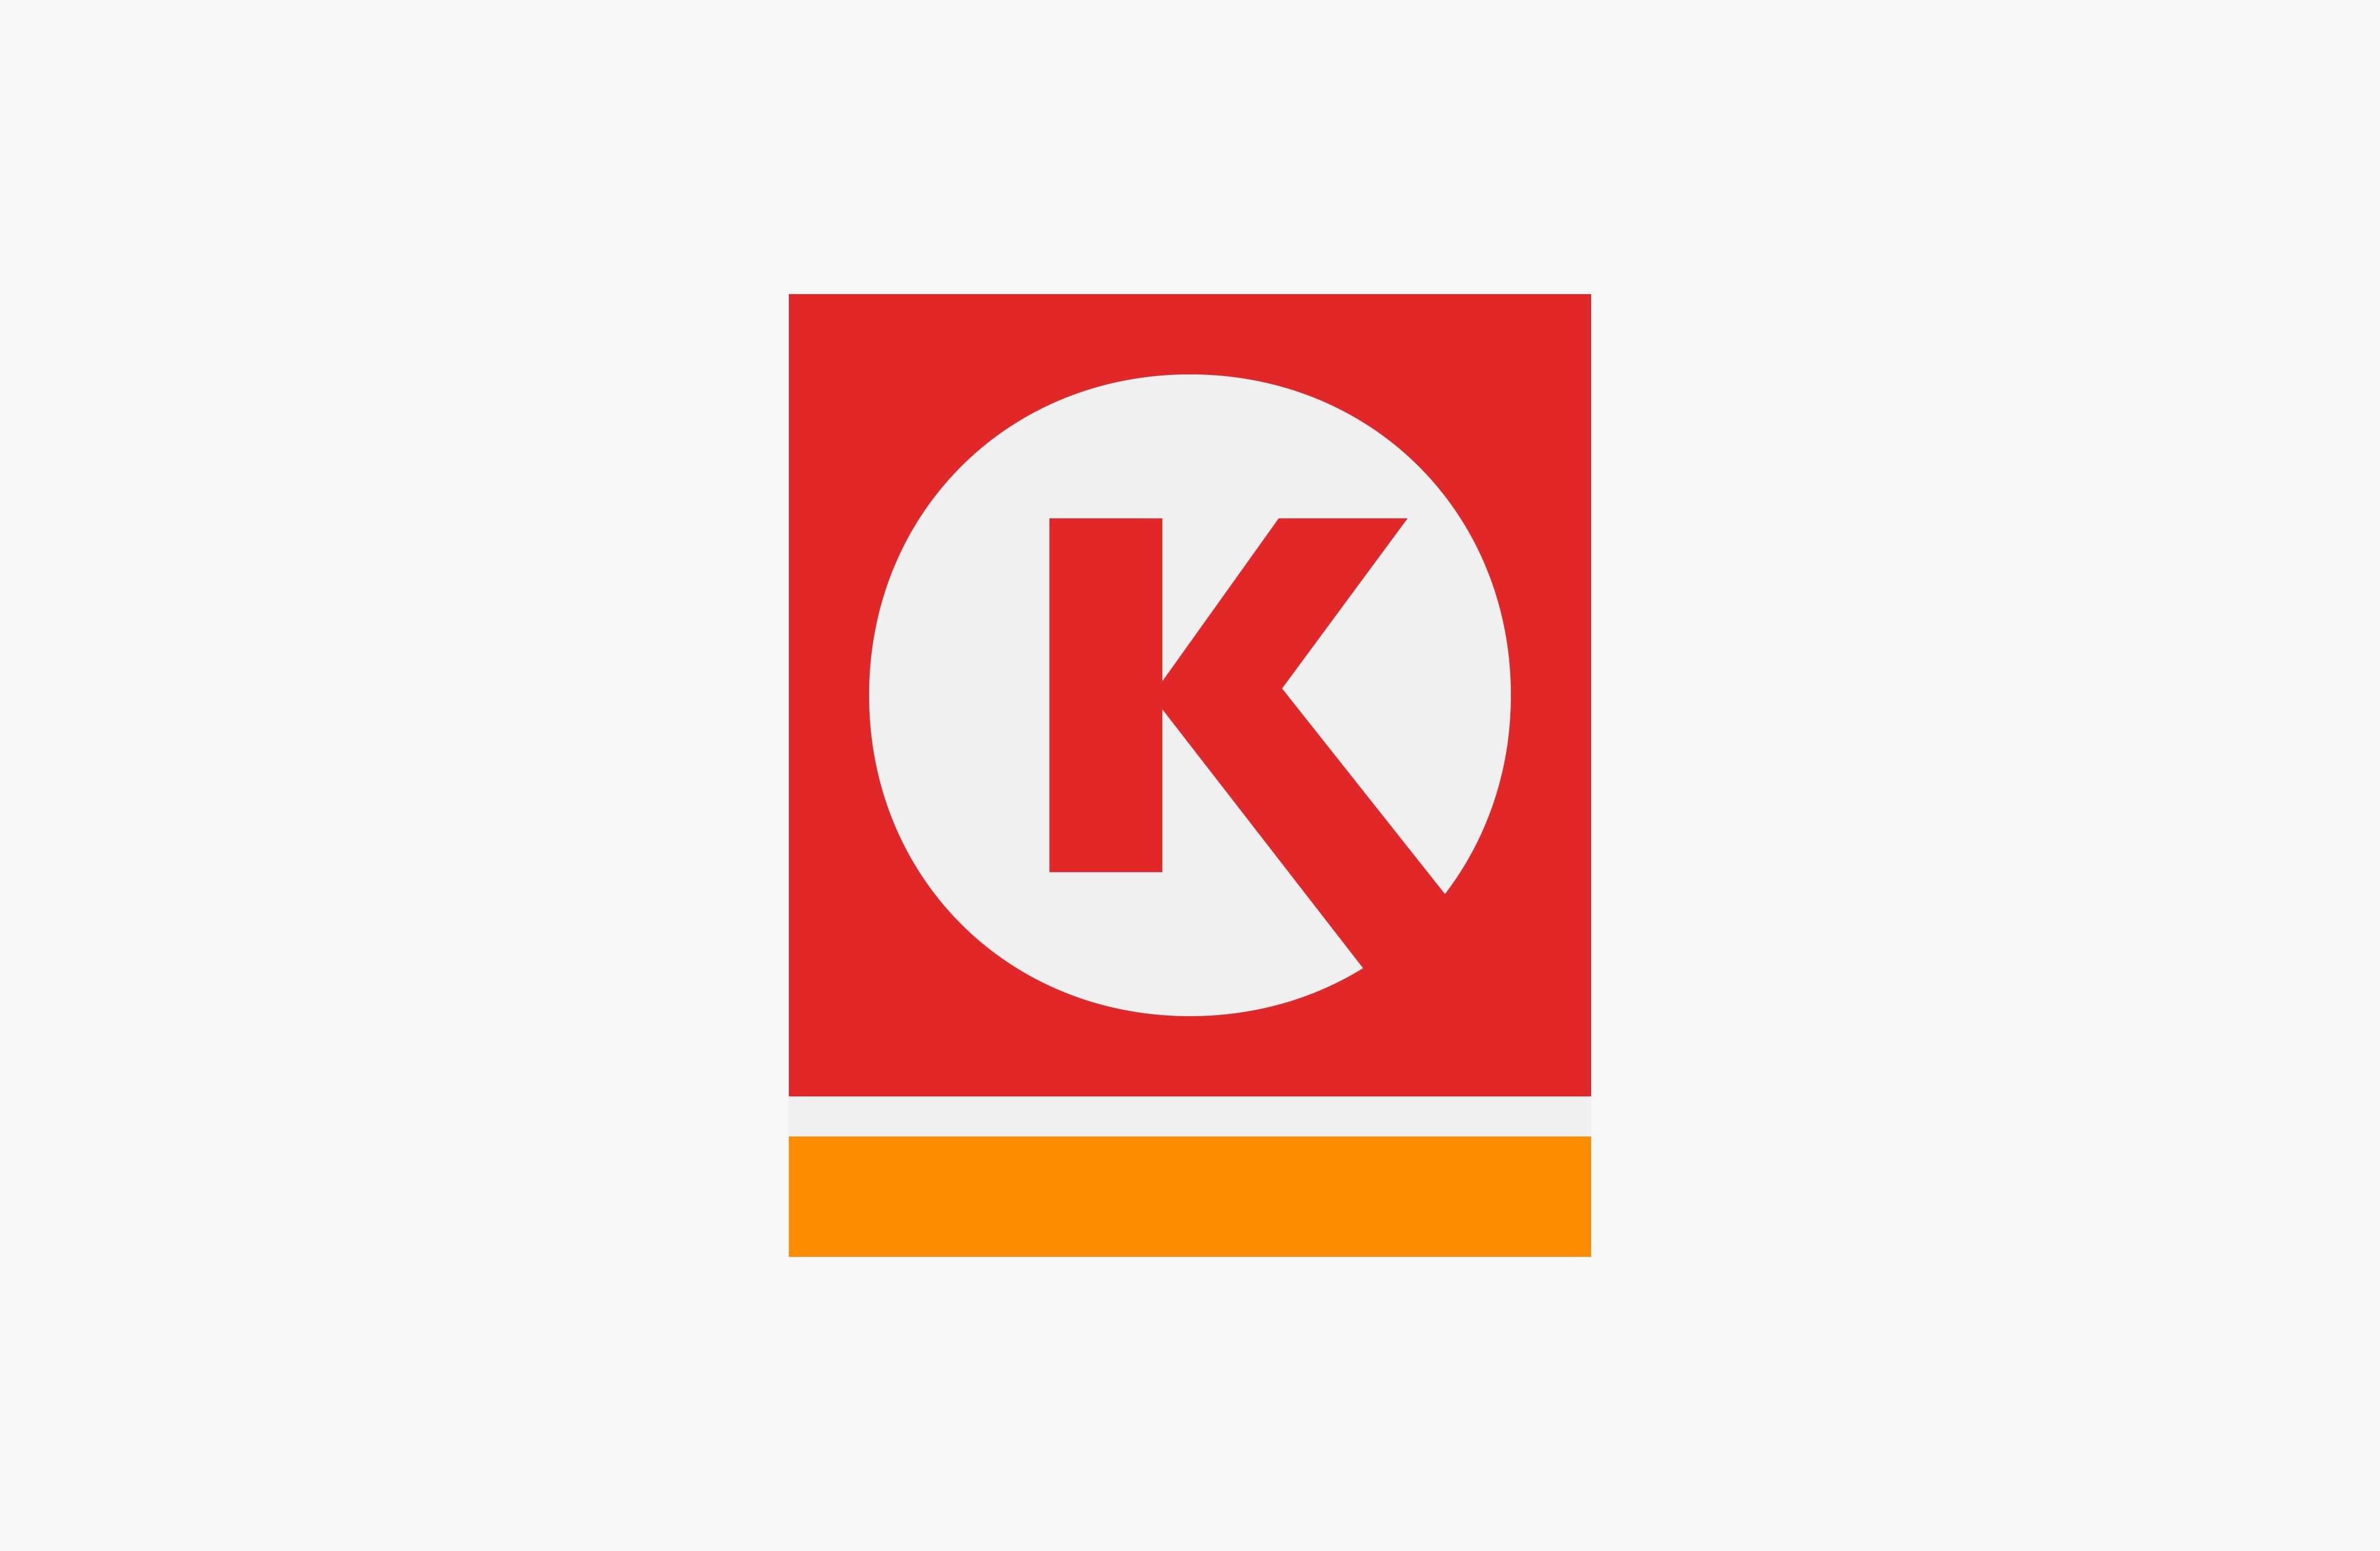 What's the Orange Circle Logo - Circle K – Studio Tobias Røder